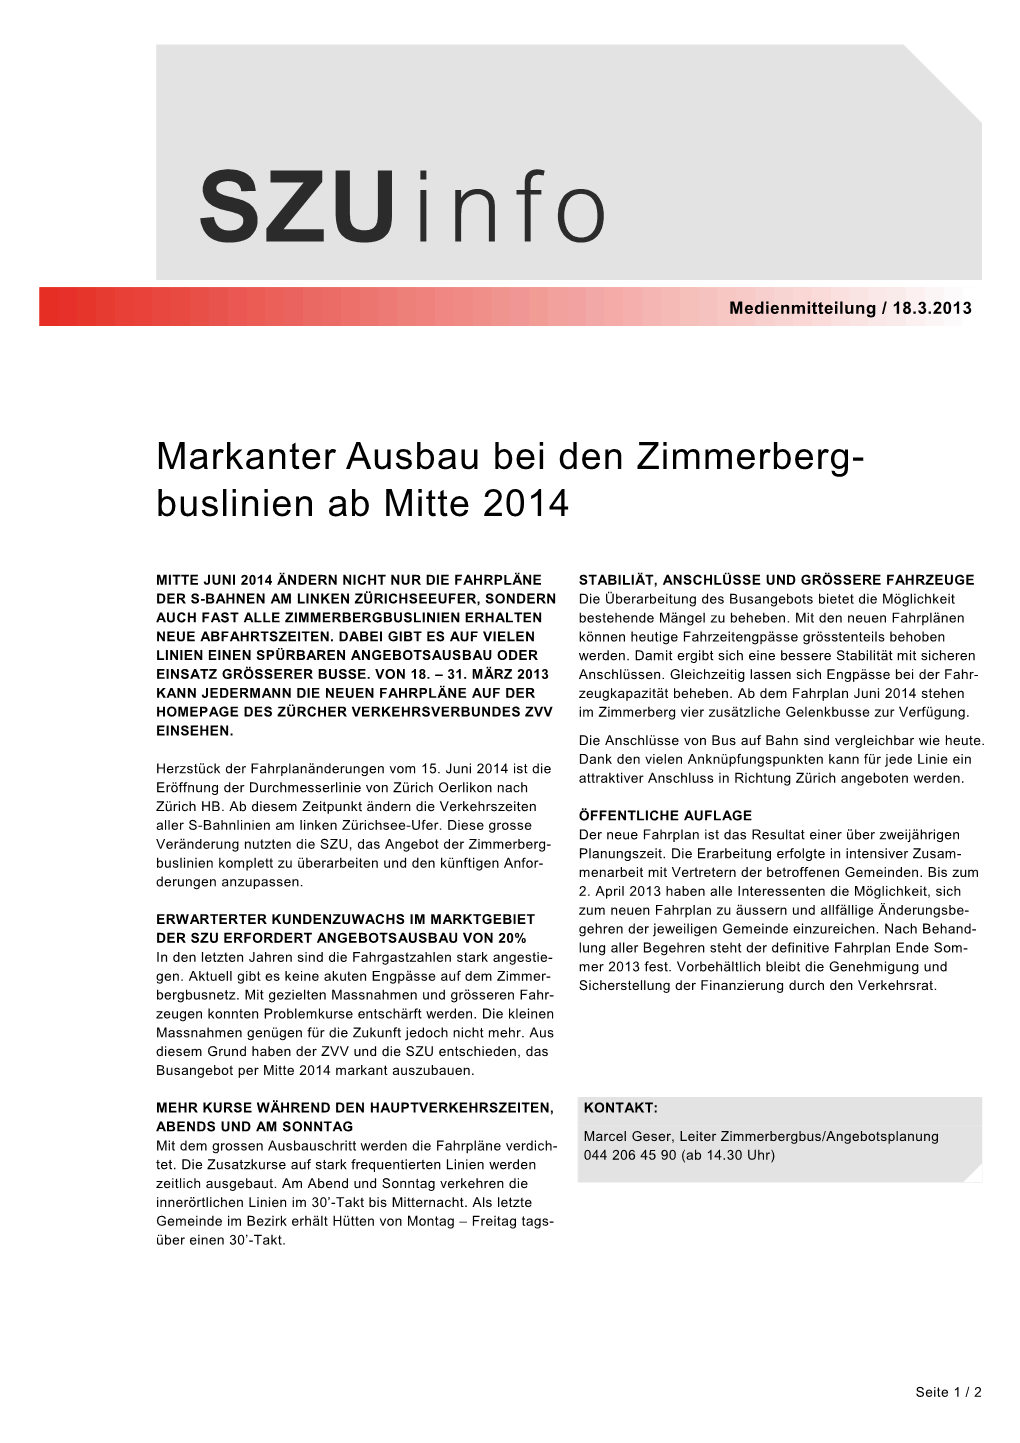 Markanter Ausbau Bei Den Zimmerberg- Buslinien Ab Mitte 2014